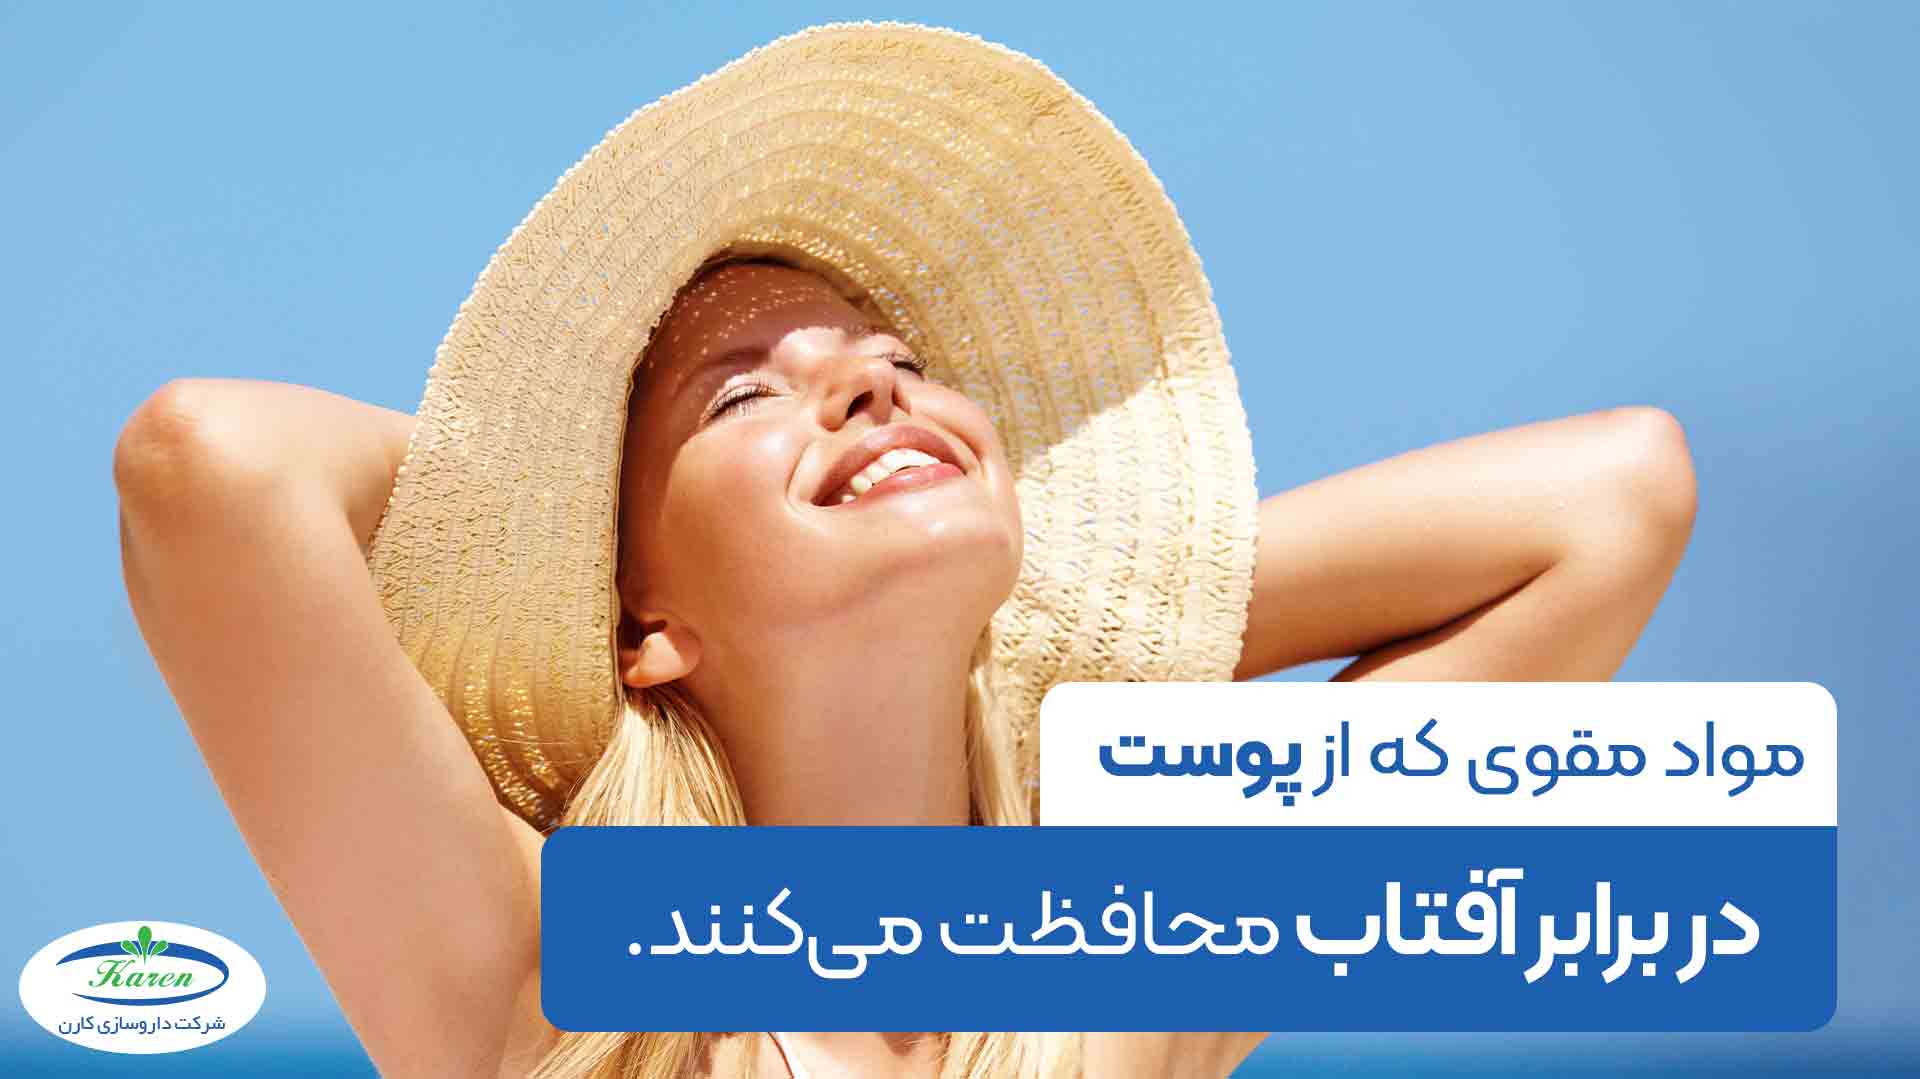 مواد مغذی محافظت کننده از  پوست در برابر آفتاب